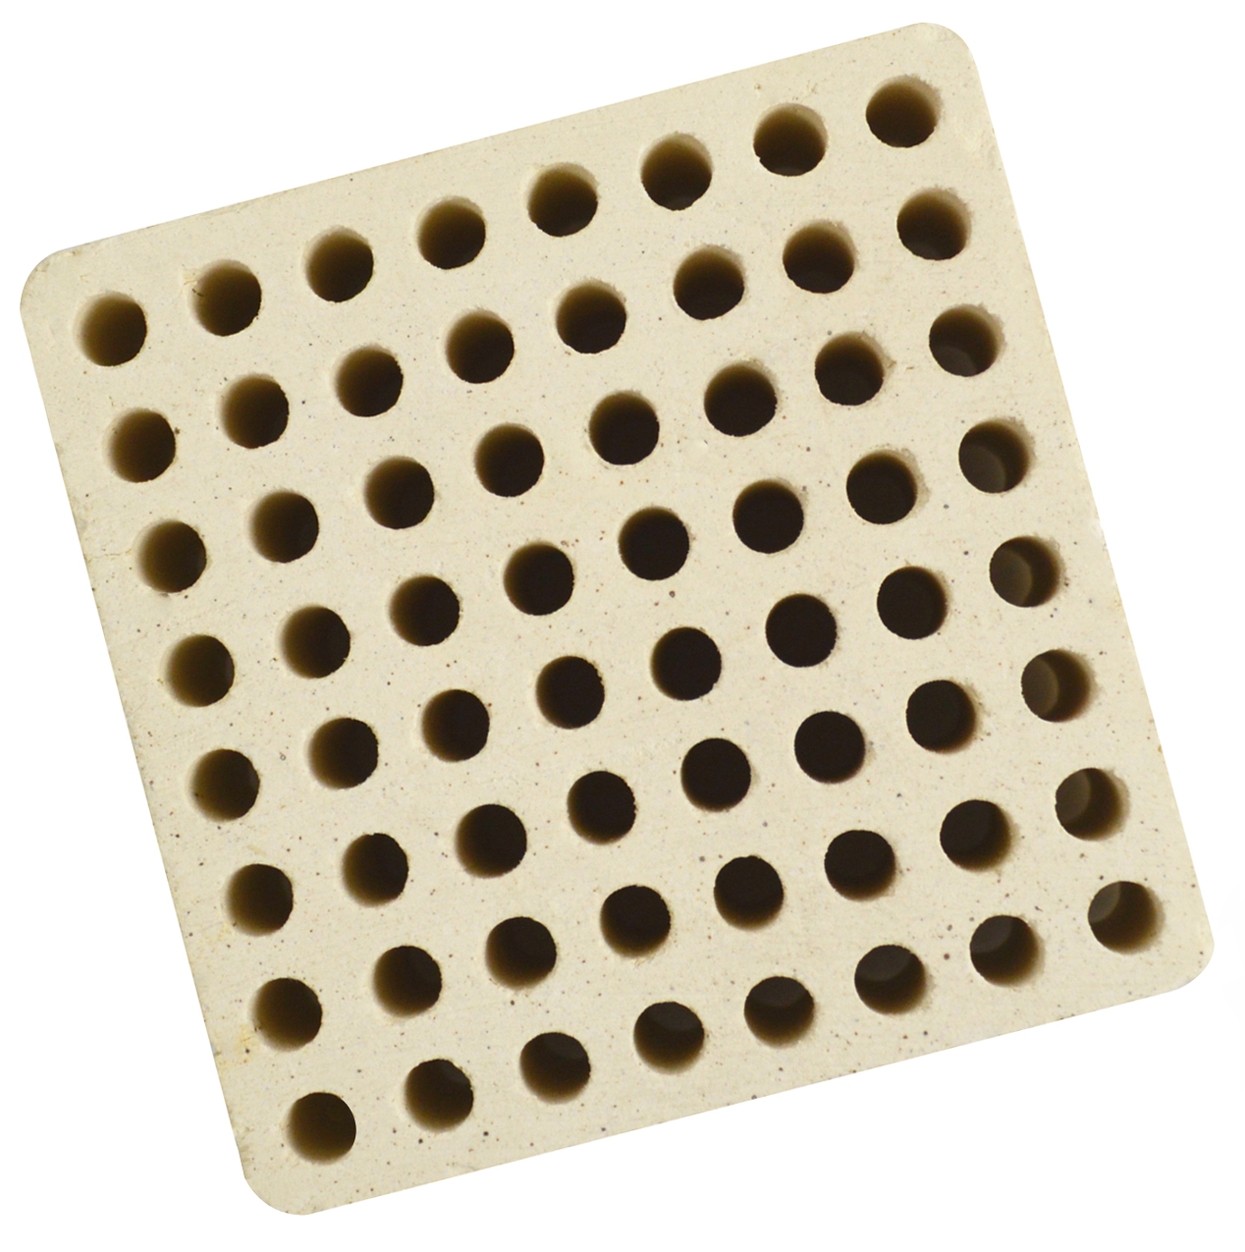 Honeycomb Ceramic Block Square with 64 Holes (4 mm Diameter) 